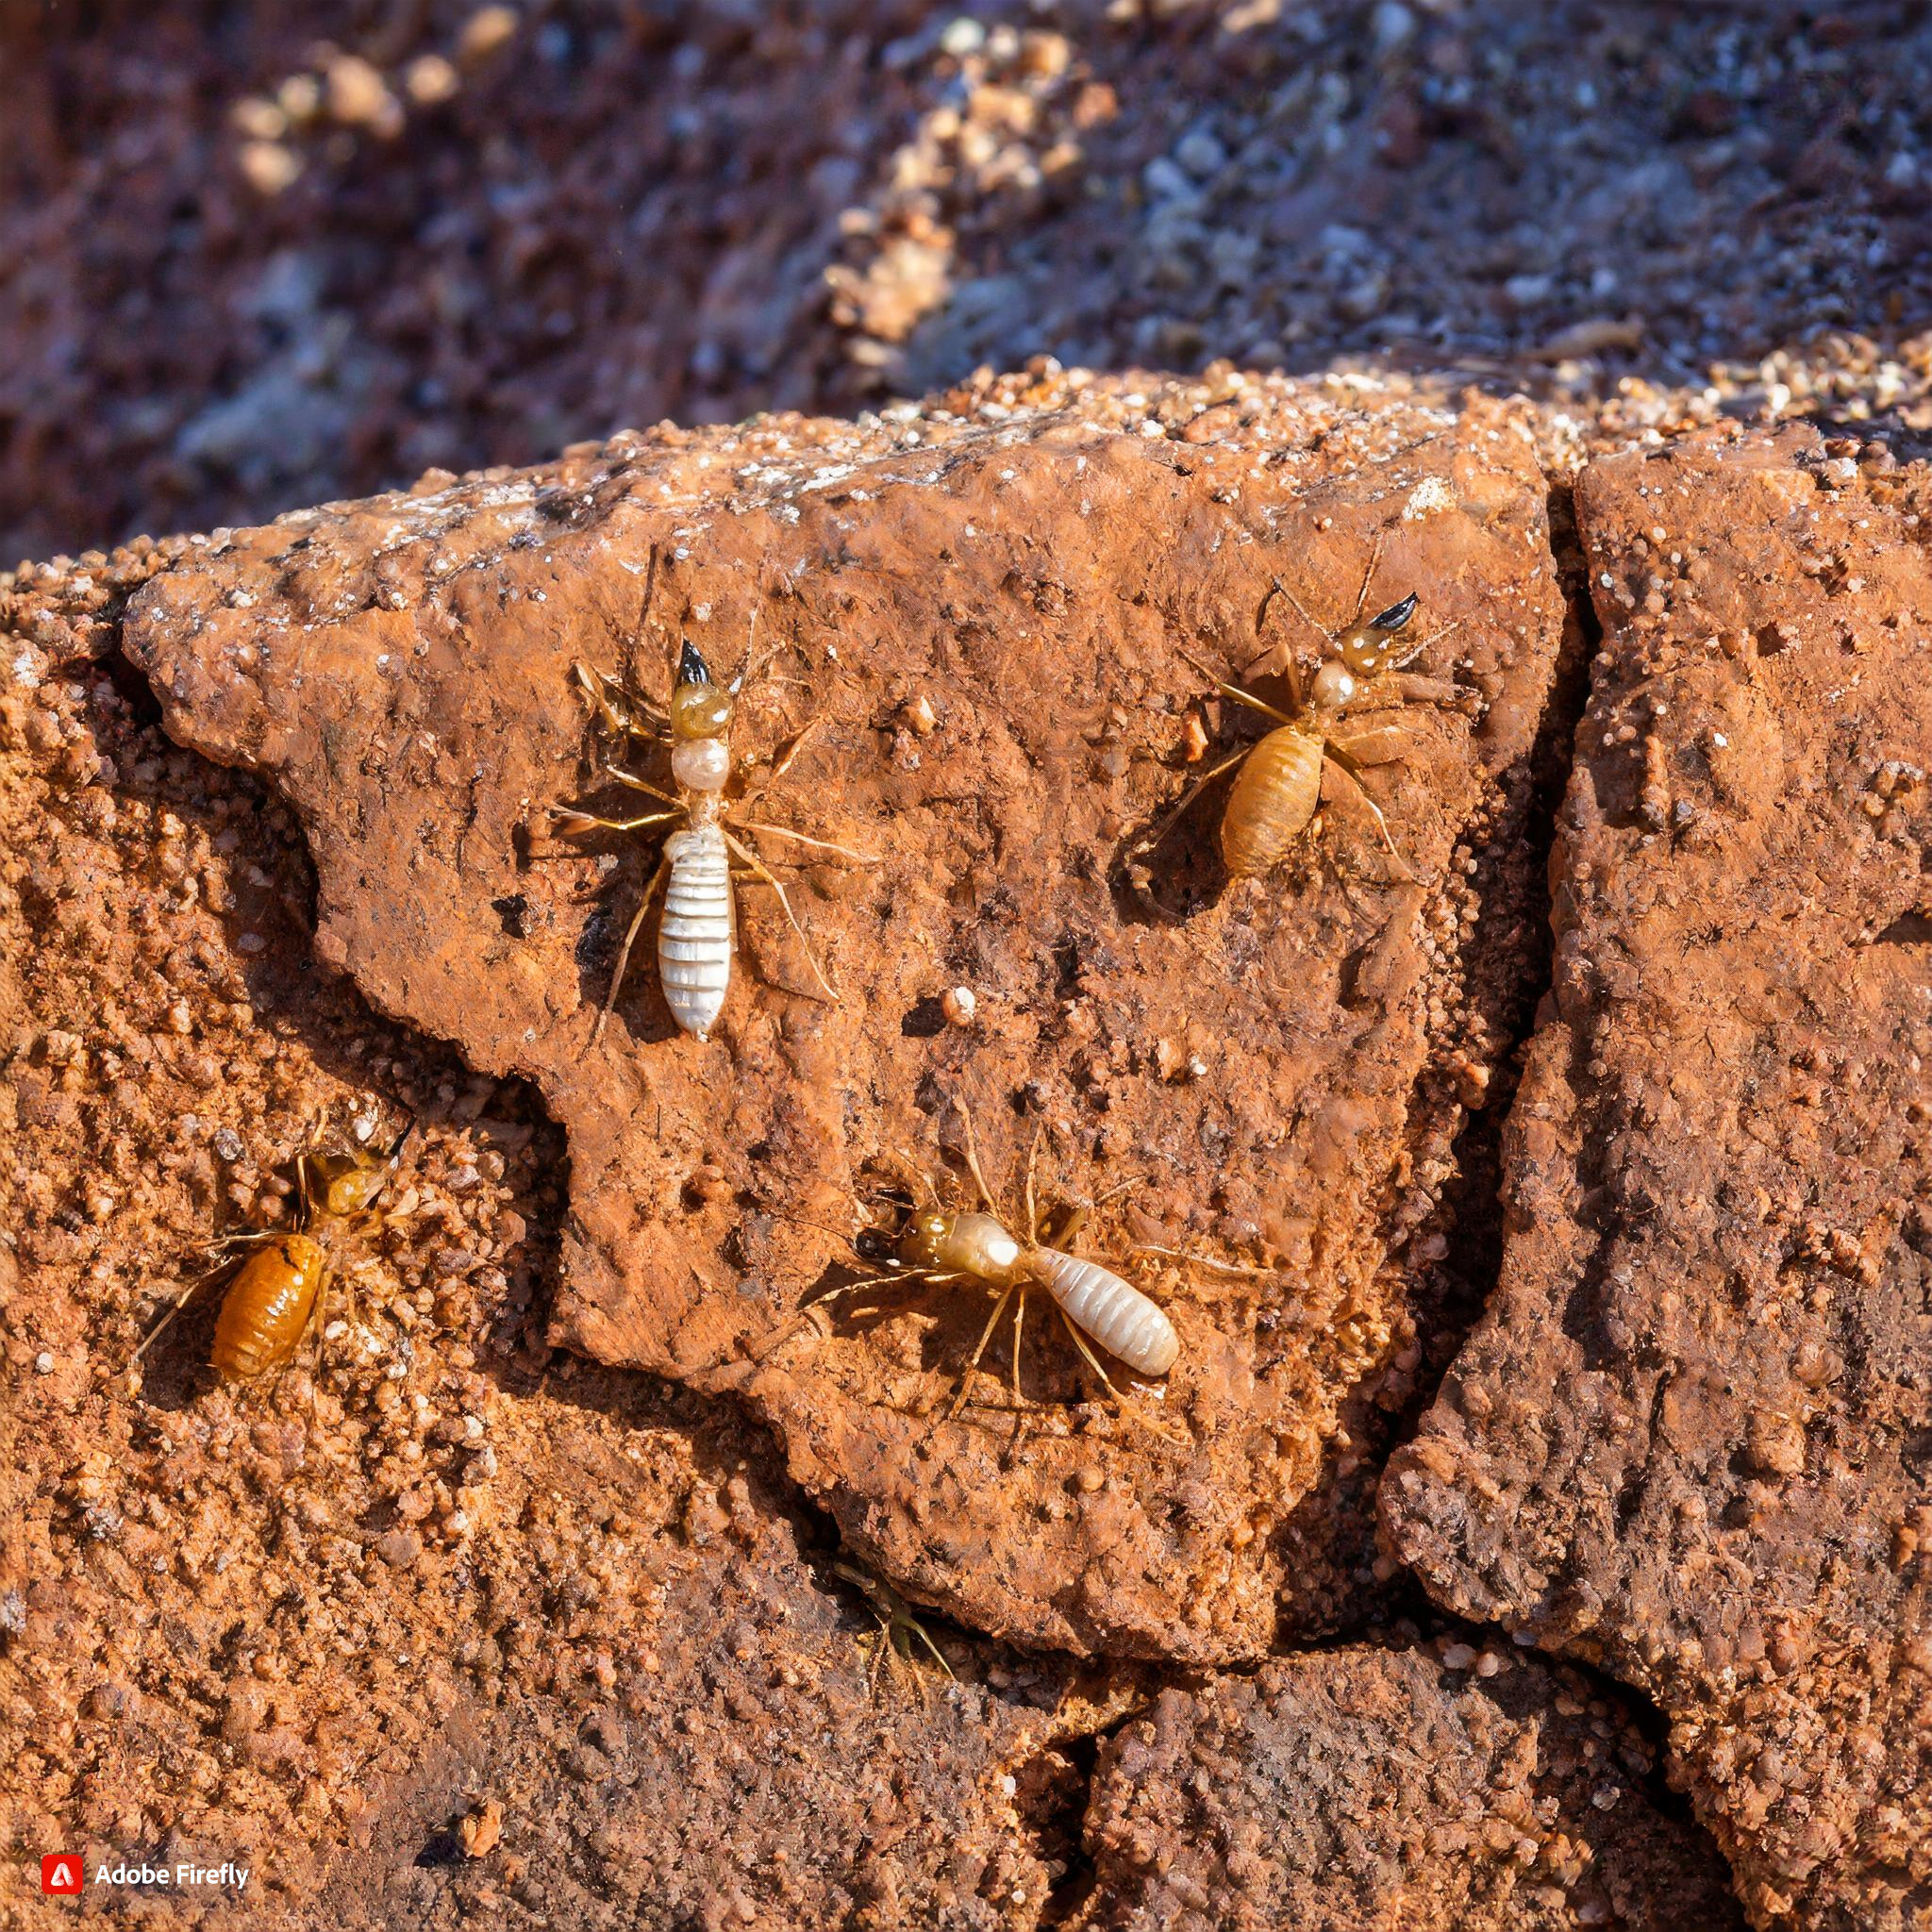 types of termites in arizona